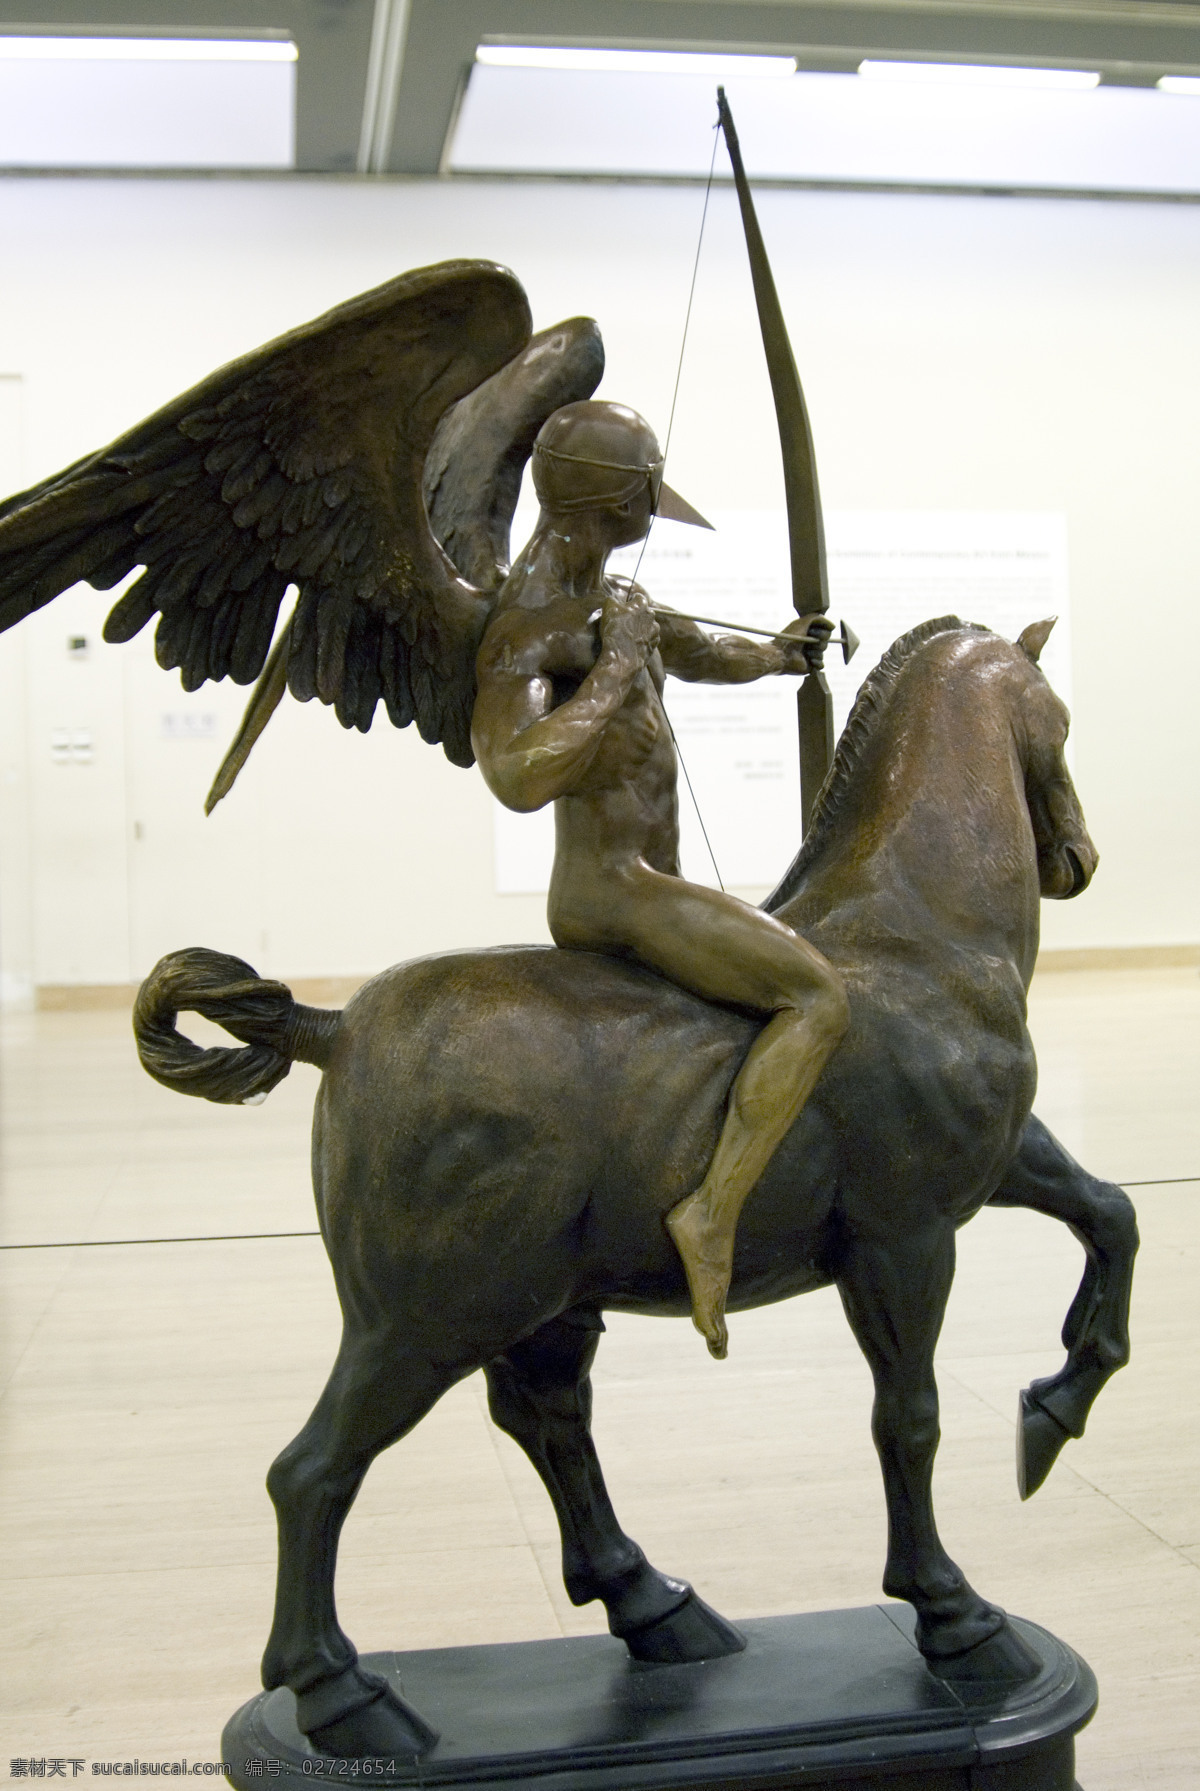 骑士 铜雕 雕塑 建筑园林 美术馆 文化艺术 西方雕塑 艺术空间 骑士铜雕 艺术展 美术展览 装饰素材 展示设计